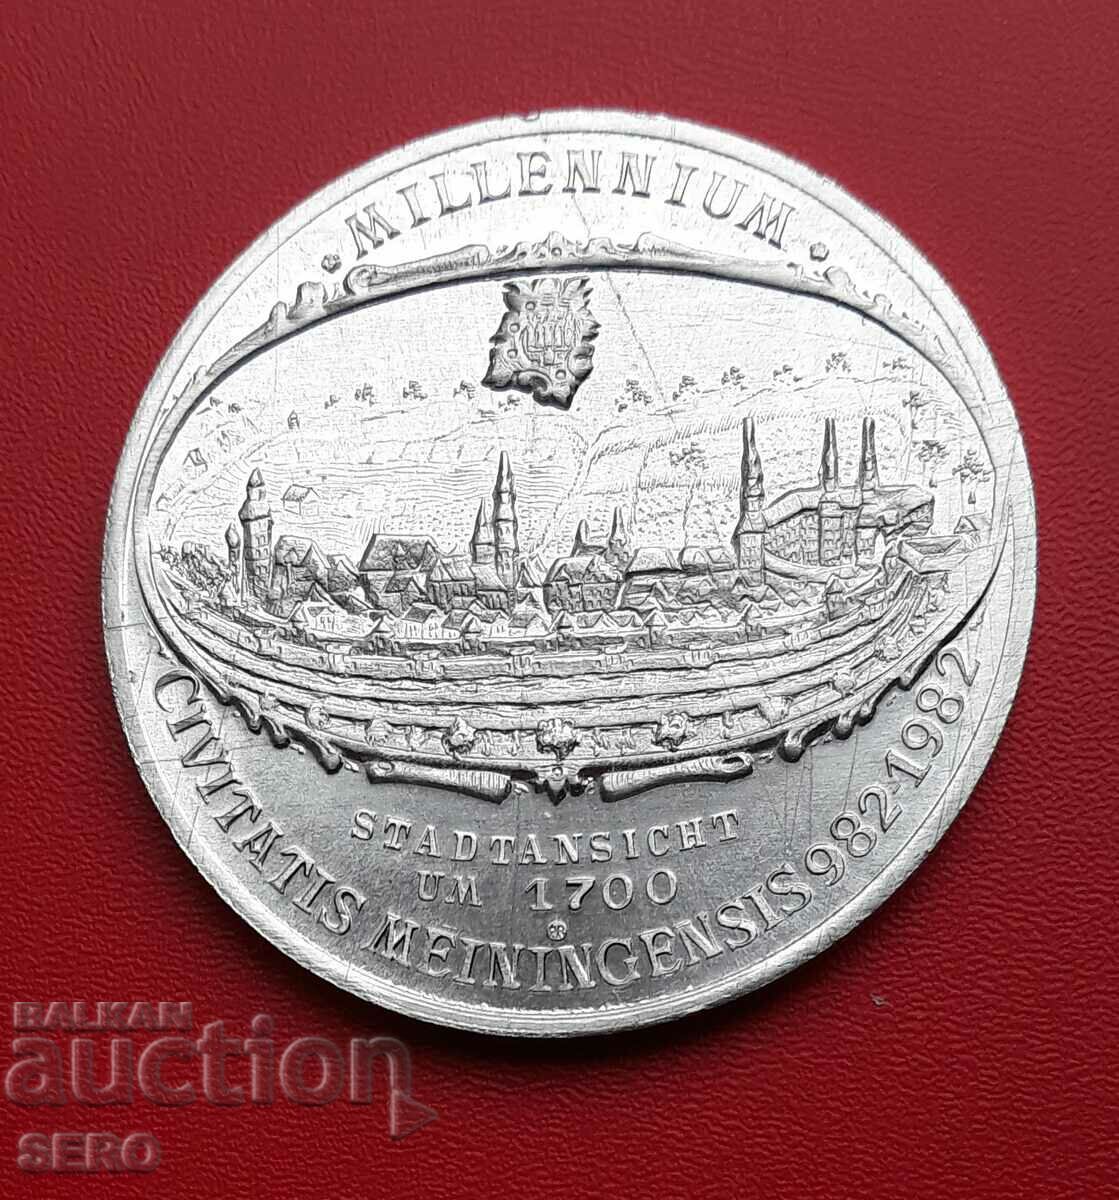 Germania-medalie 1982-1000 de ani orașul Meiningen